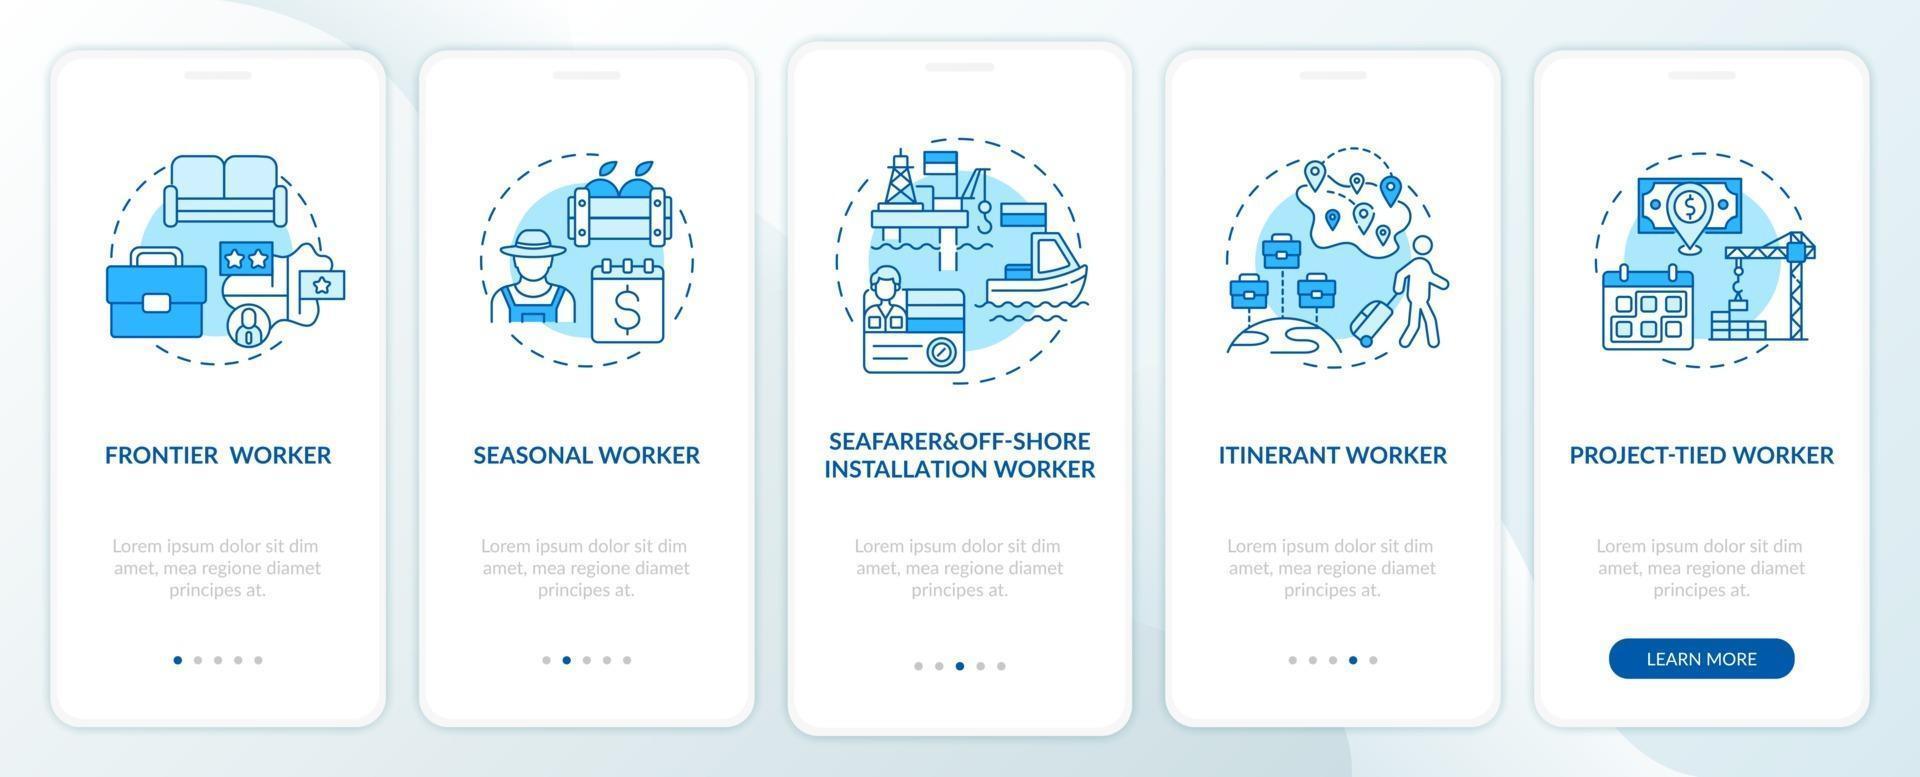 trabalhadores migrantes digitam tela azul da página do aplicativo móvel de integração com conceitos vetor